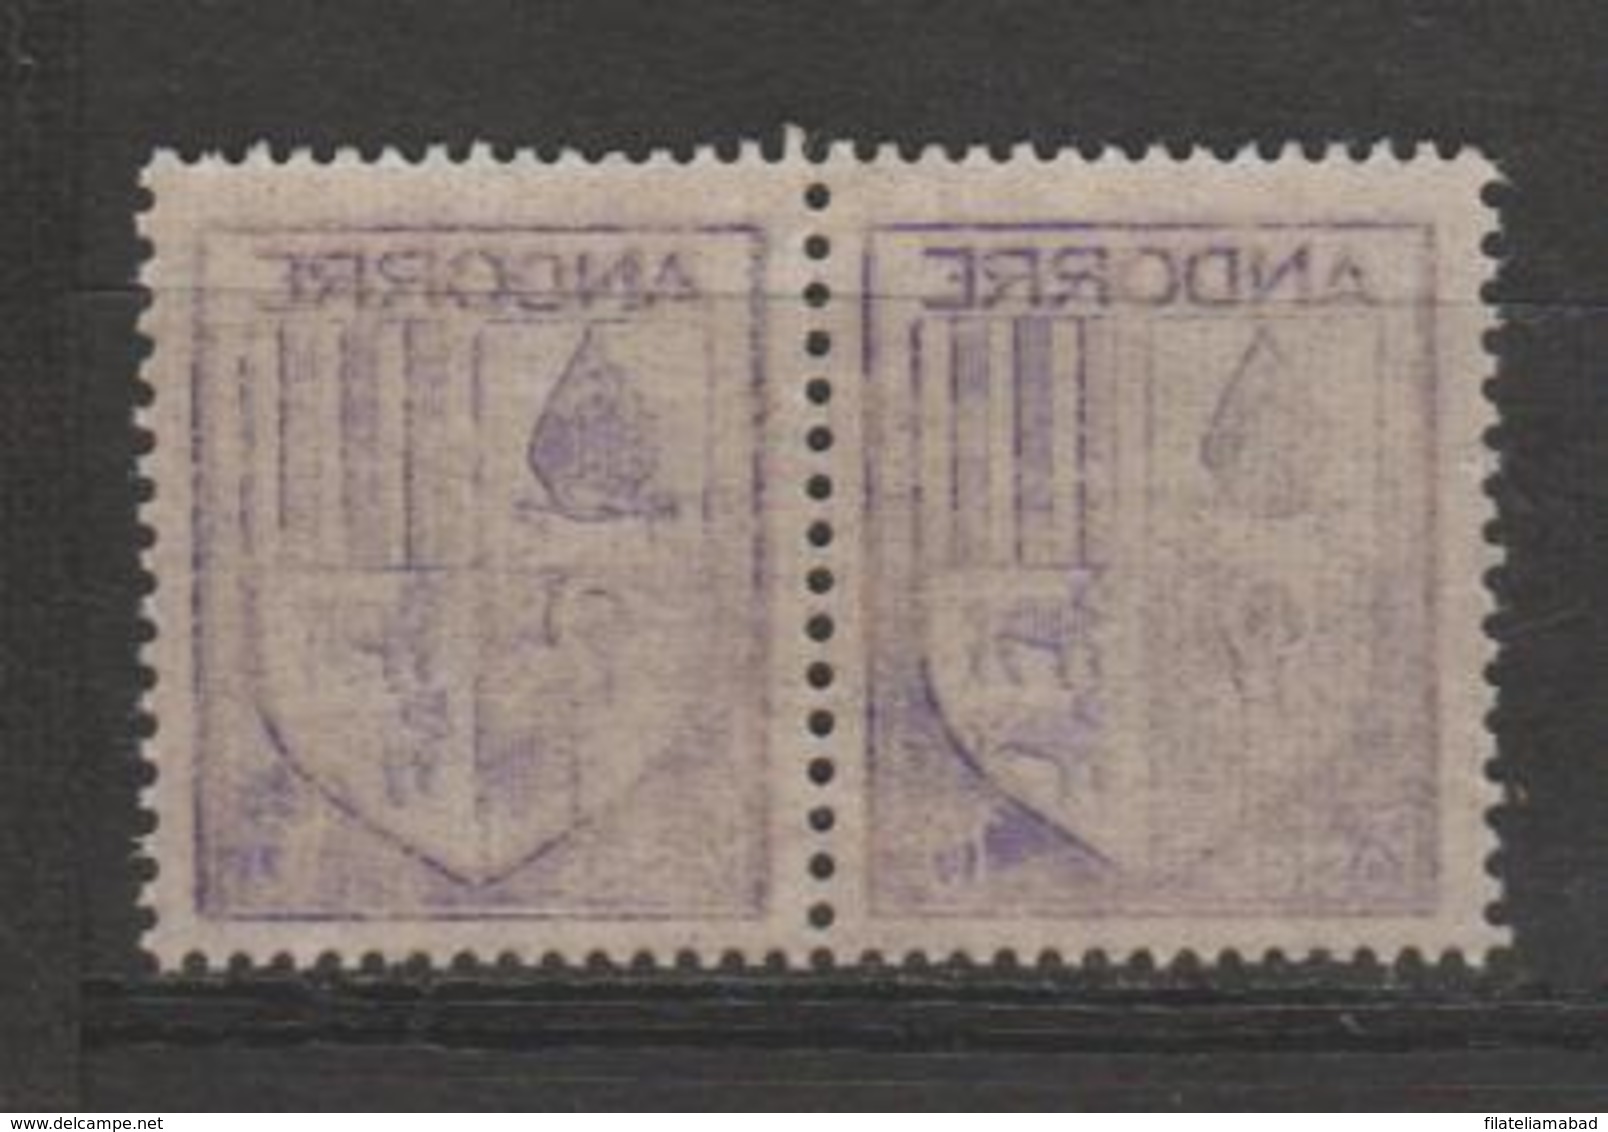 ANDORRA-CORREO FRANCES VARIEDAD PAREJA DE SELLO  CALCADO POR EL REBERSO RECTO BERSO (S.8) - Unused Stamps